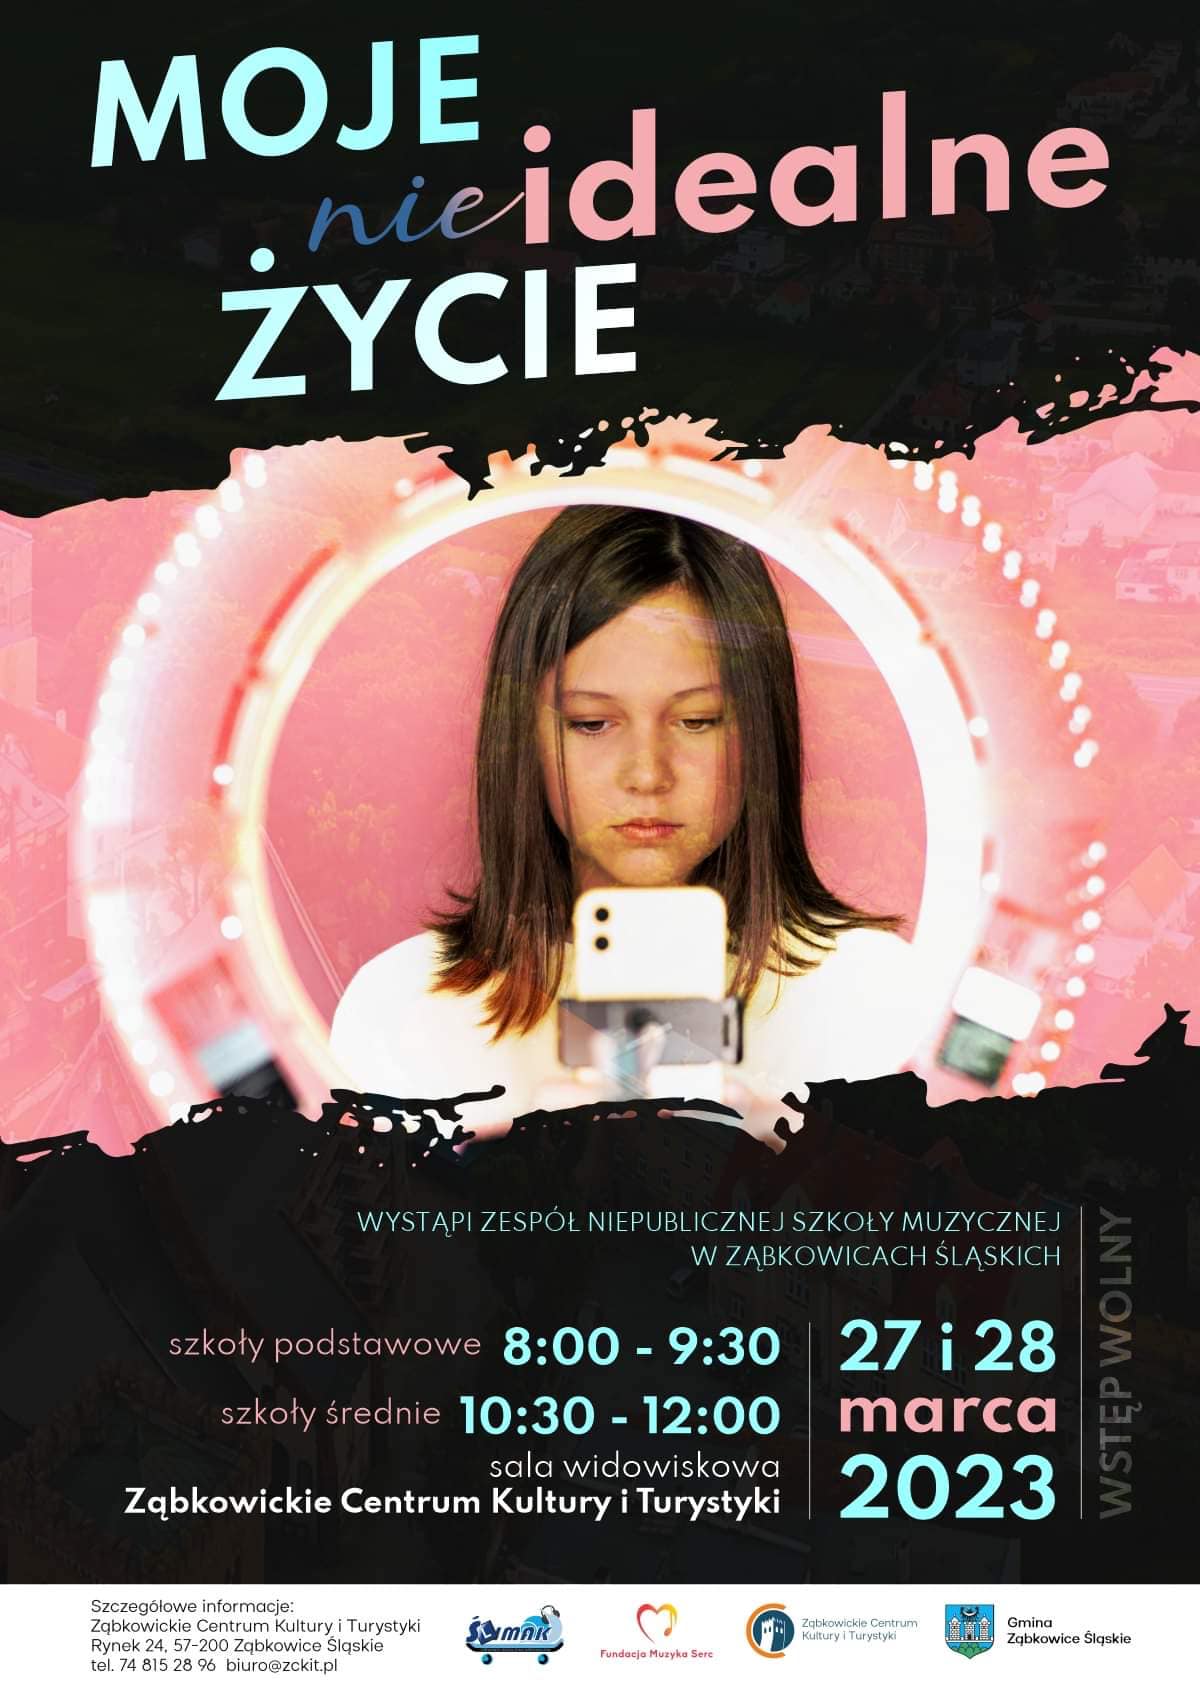 Plakat informujący o występie pod tytułem "Moje nieidealne życie" 27 i 28 marca 2023 o 8:00 i 10:30 na sali widowiskowej Ząbkowickiego Centrum Kultury i Turystyki.